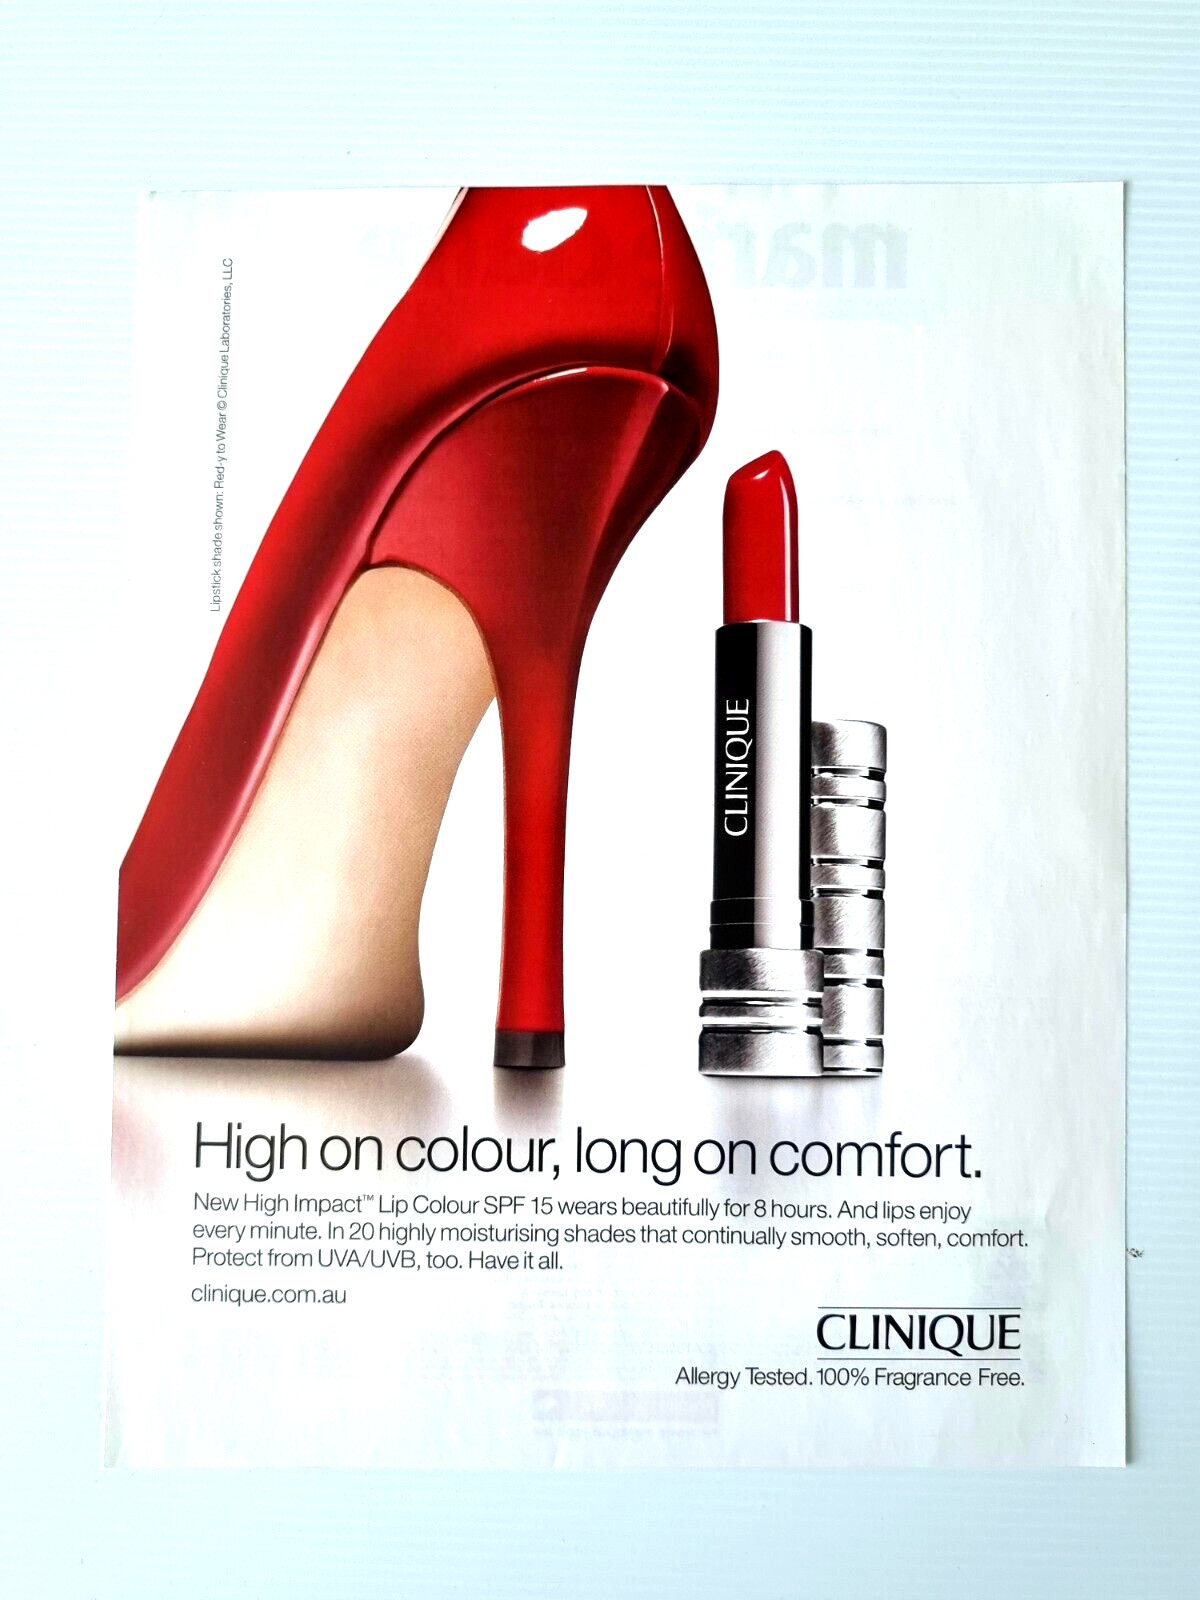 CLINIQUE - Red Lipstick Lip Colour  Makeup Shoes  Magazine  Print  AD _ D127